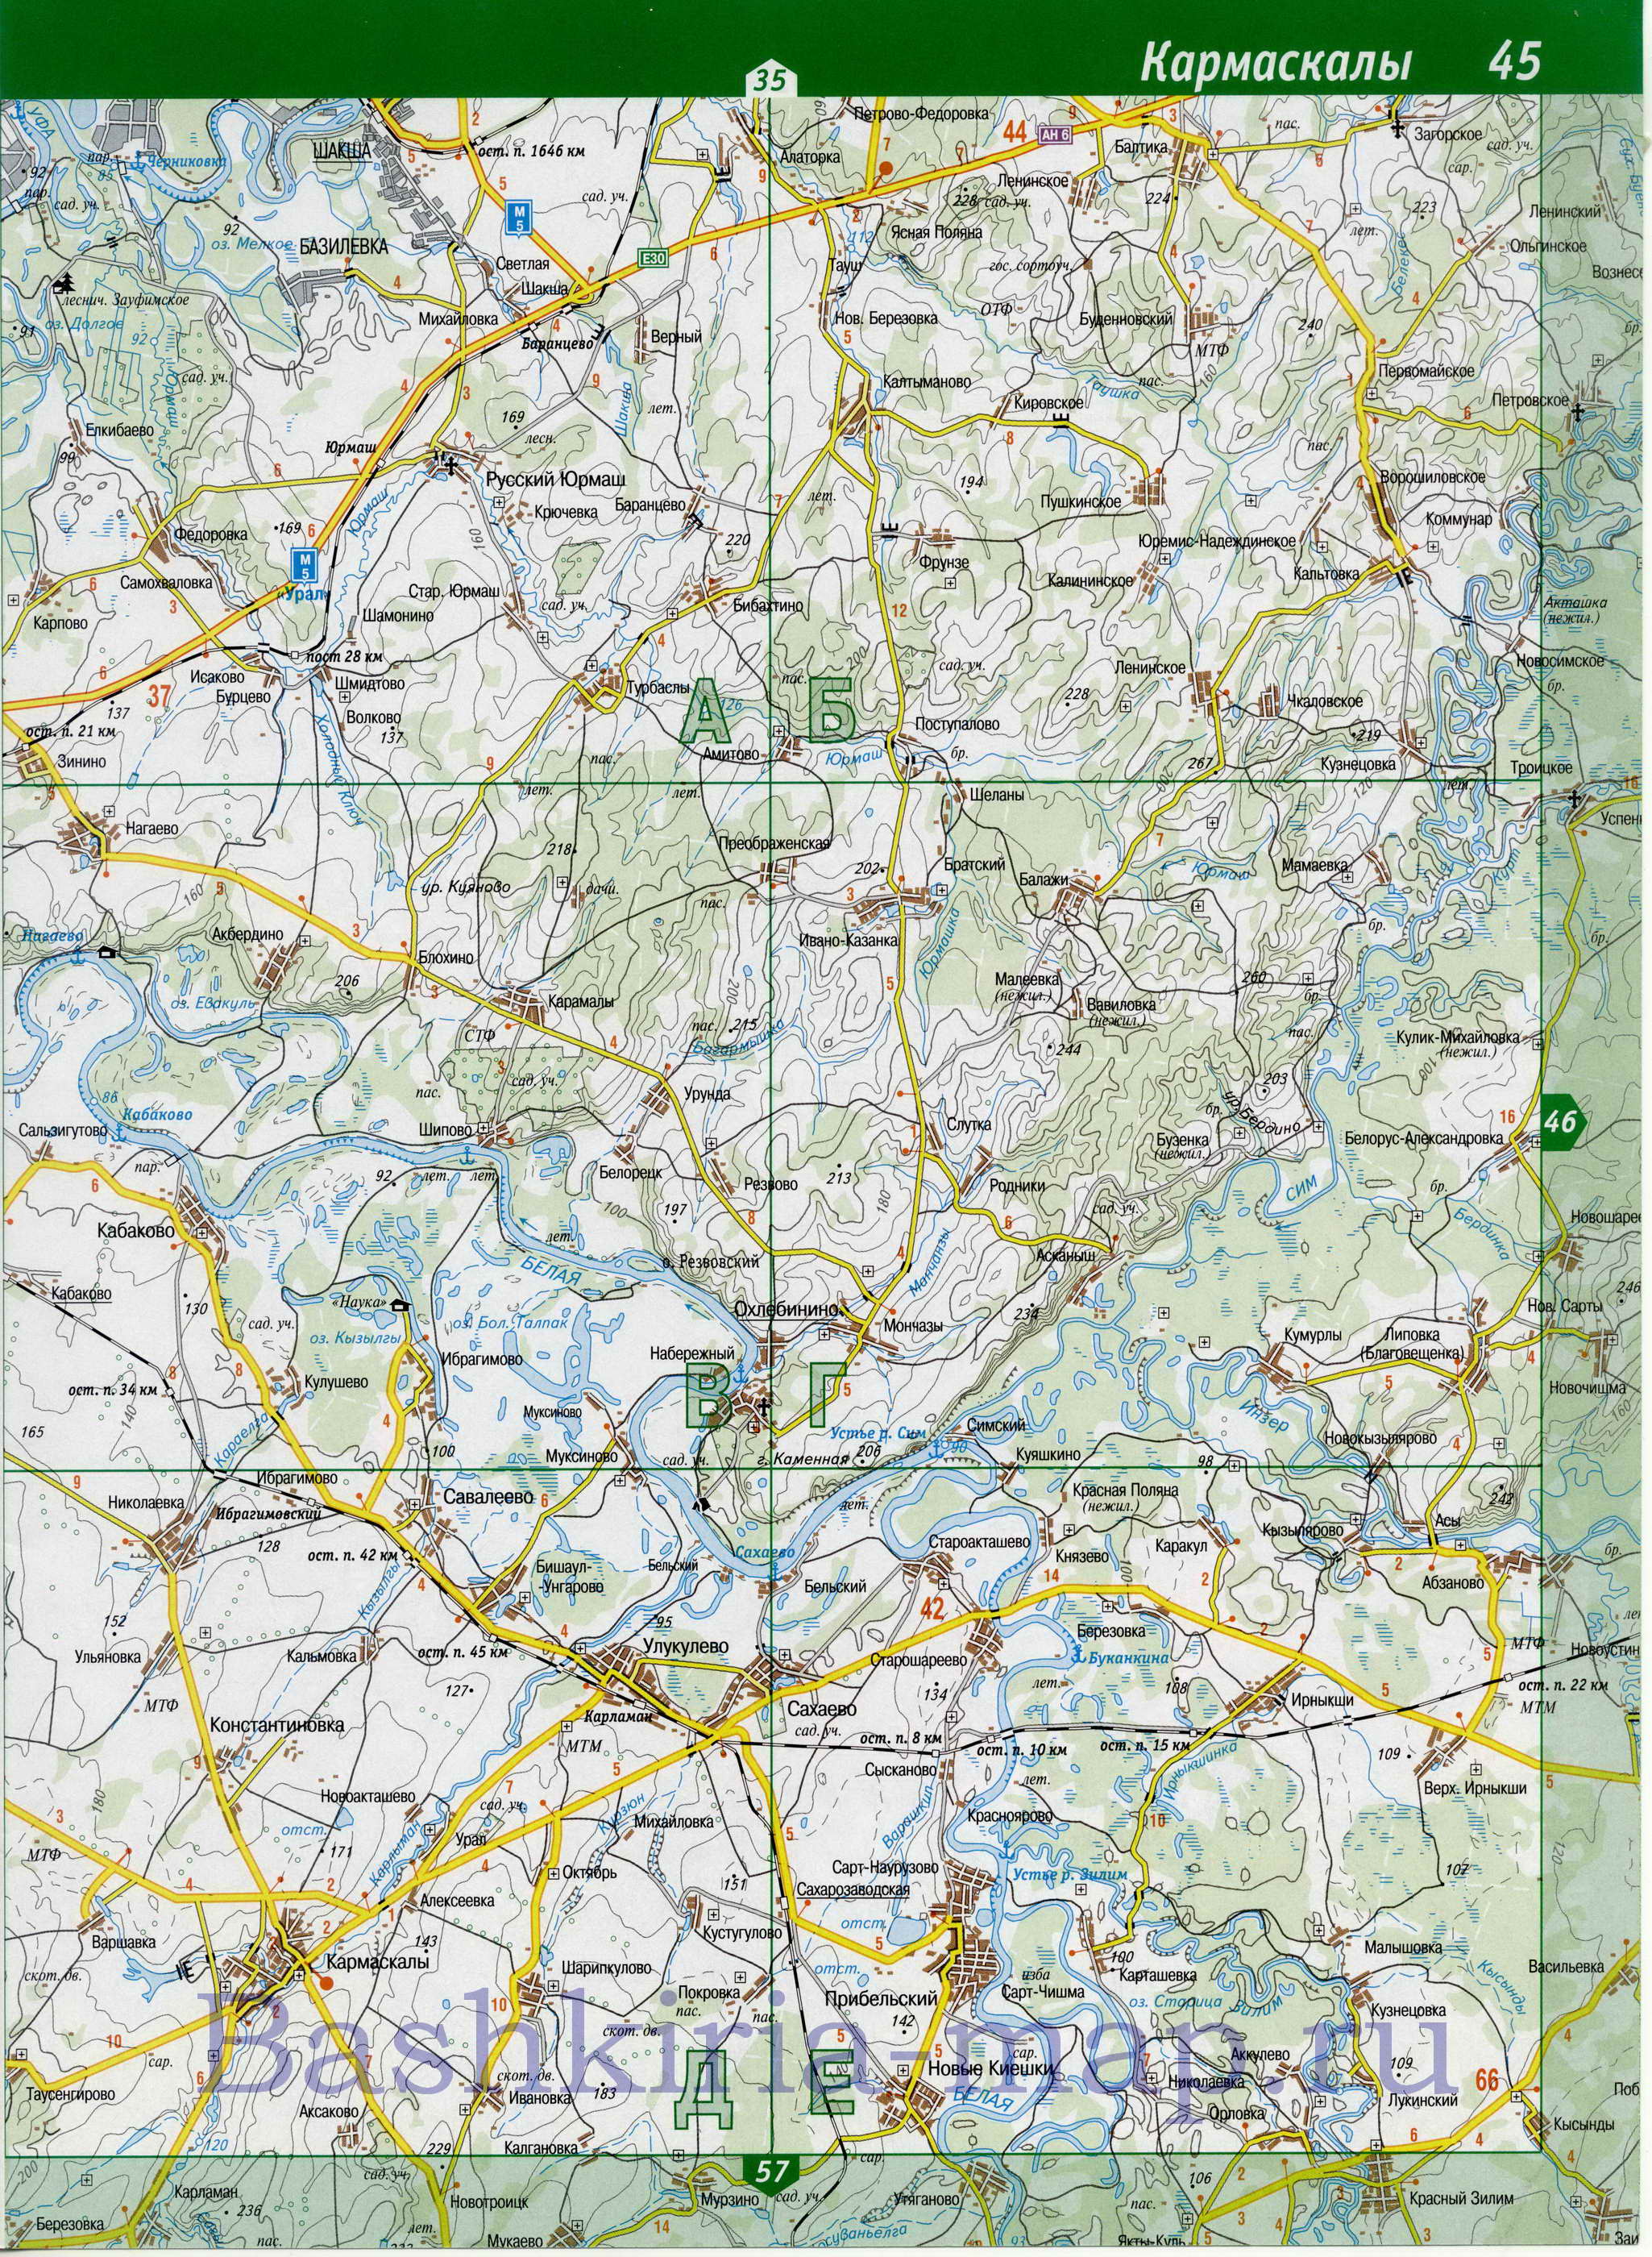 Карта Уфимского района Башкирии. Подробная карта автомобильных дорог - Уфимский район, B1 - 